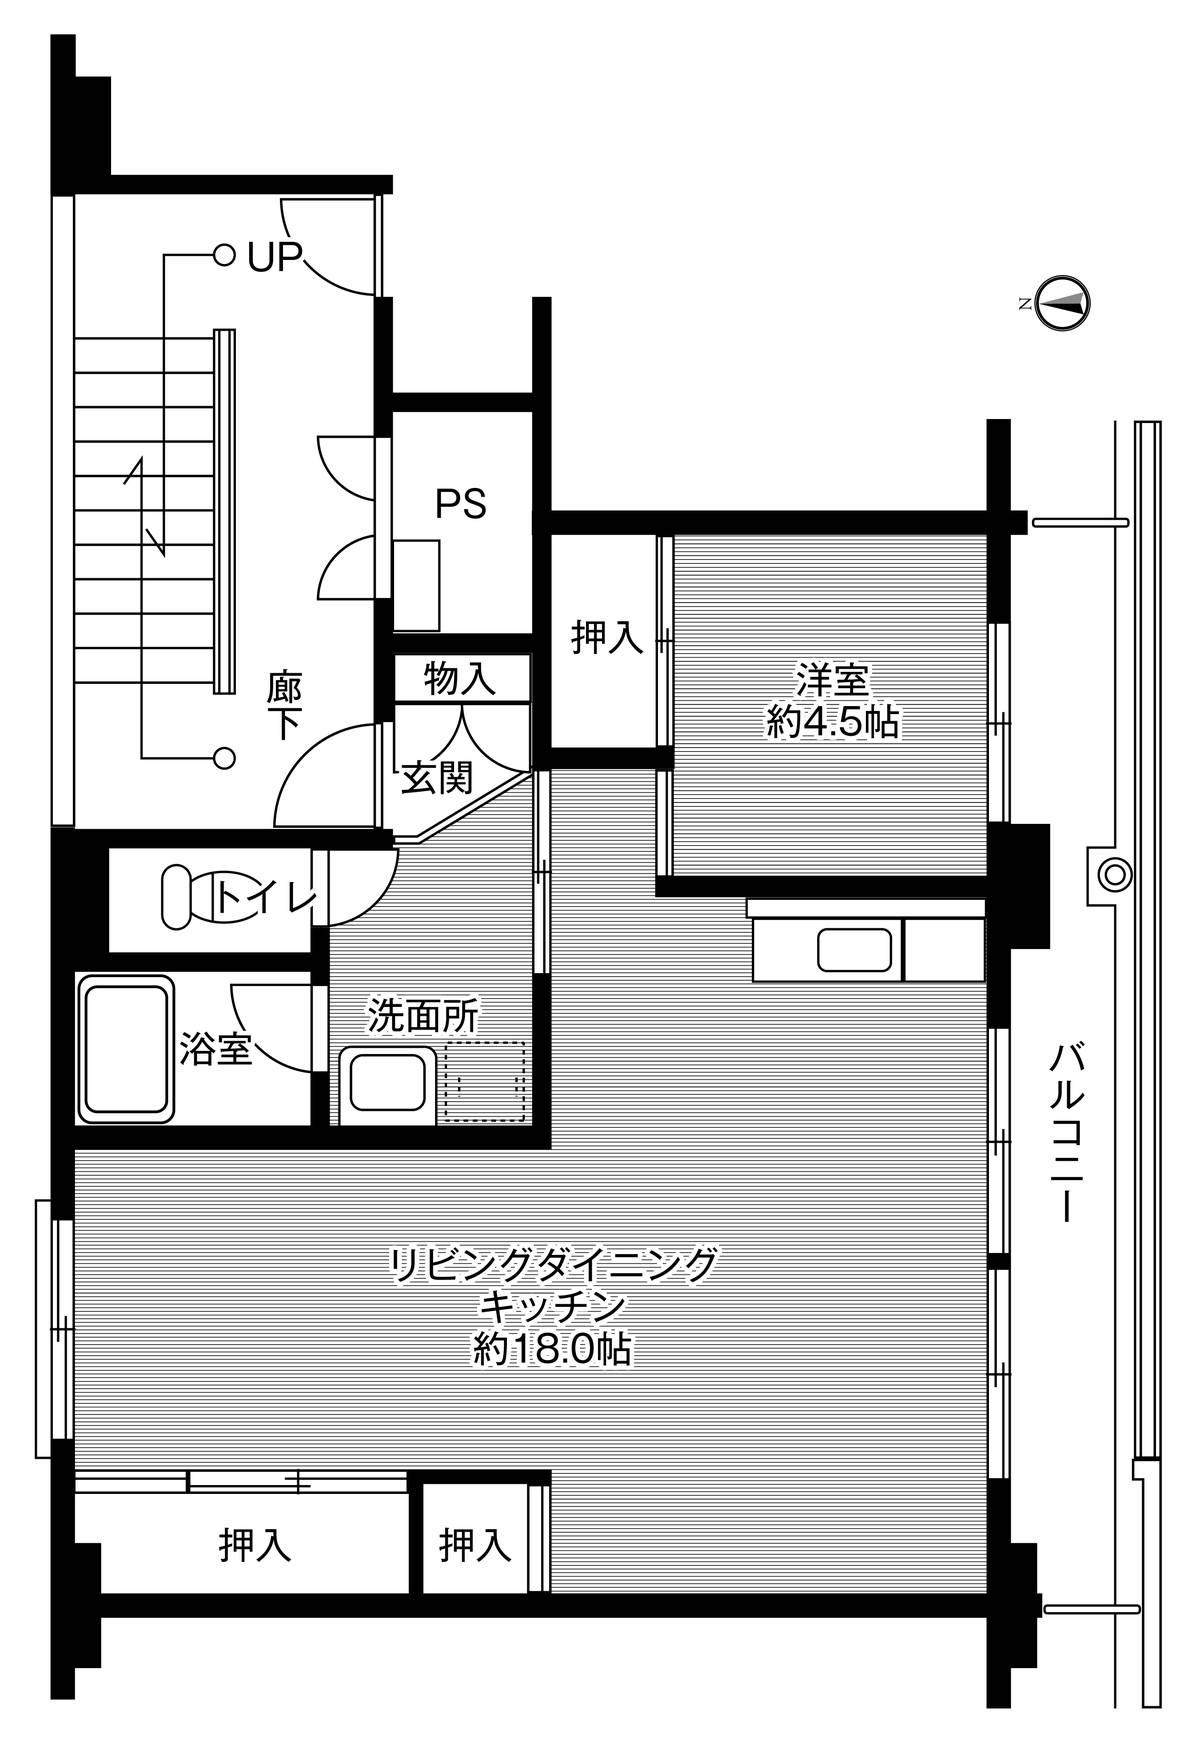 1LDK floorplan of Village House Kanbayashi in Matsumoto-shi